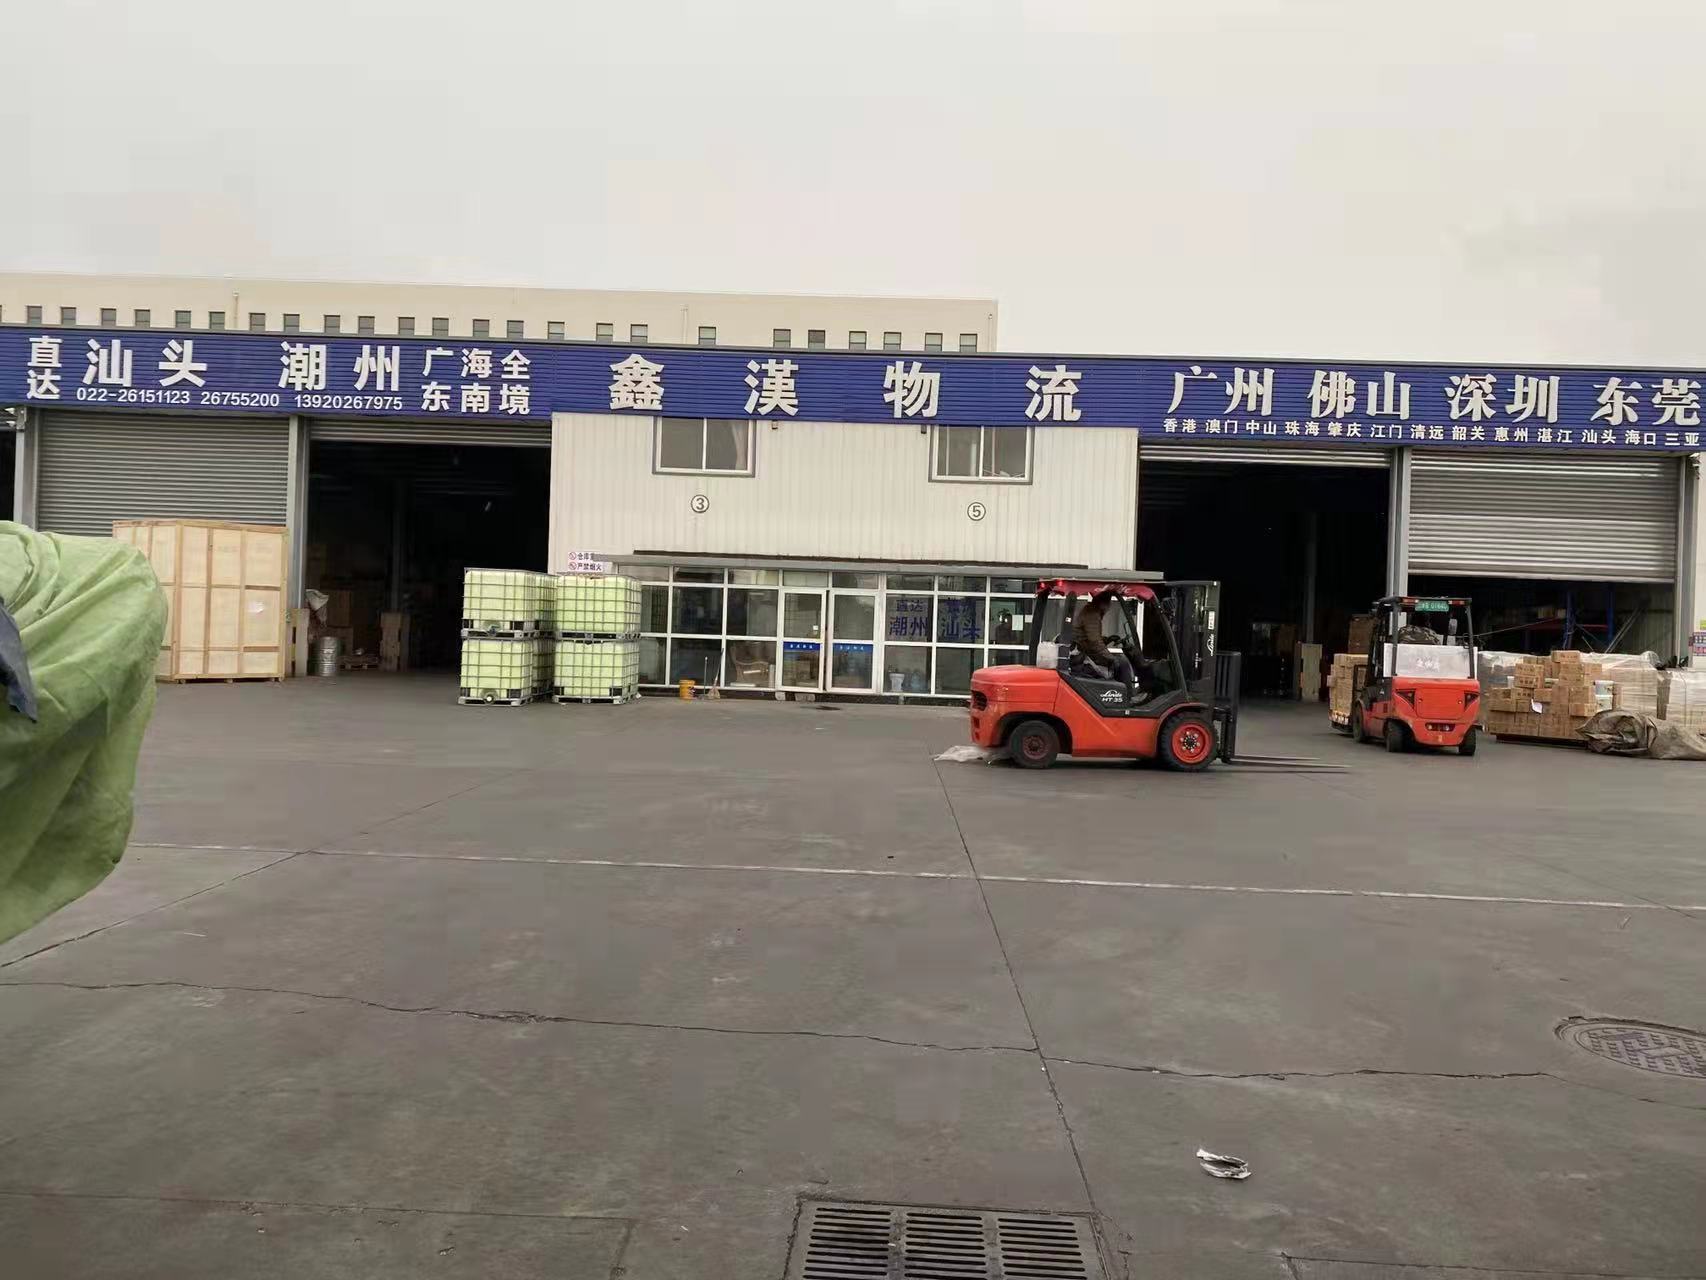 天津鑫汉物流有限公司北辰分公司的专线公司的形象展示LOGO